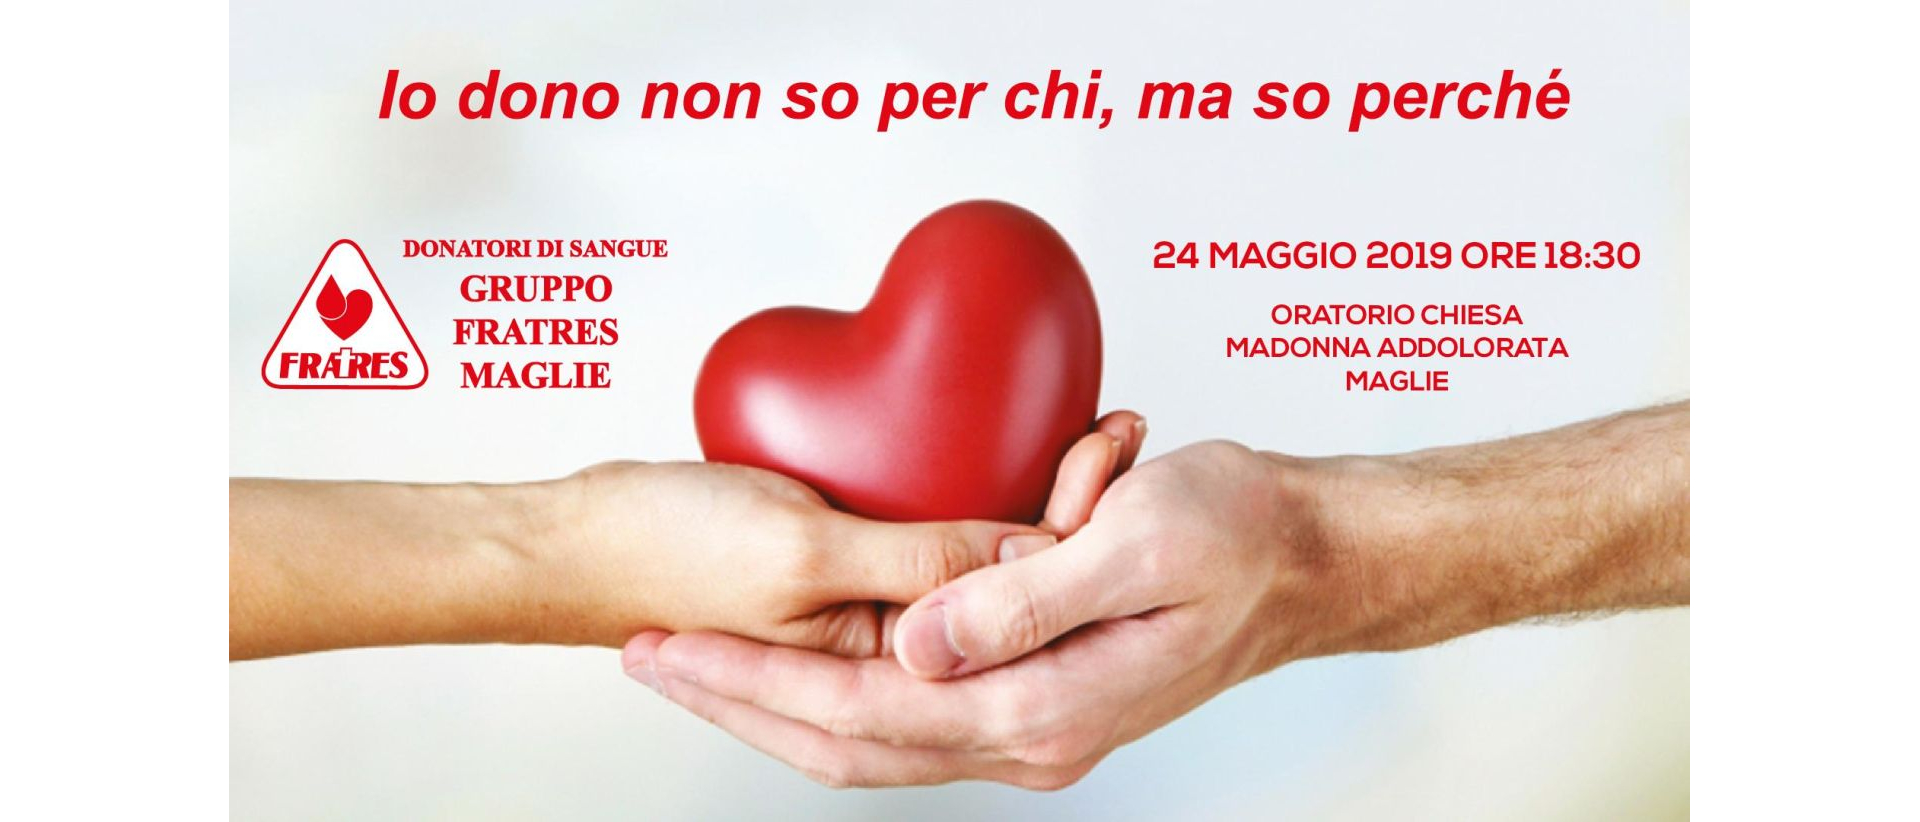 Copertina-Convegno-Donazione-Organi-24-Maggio-2019-Fratres-Maglie.jpg